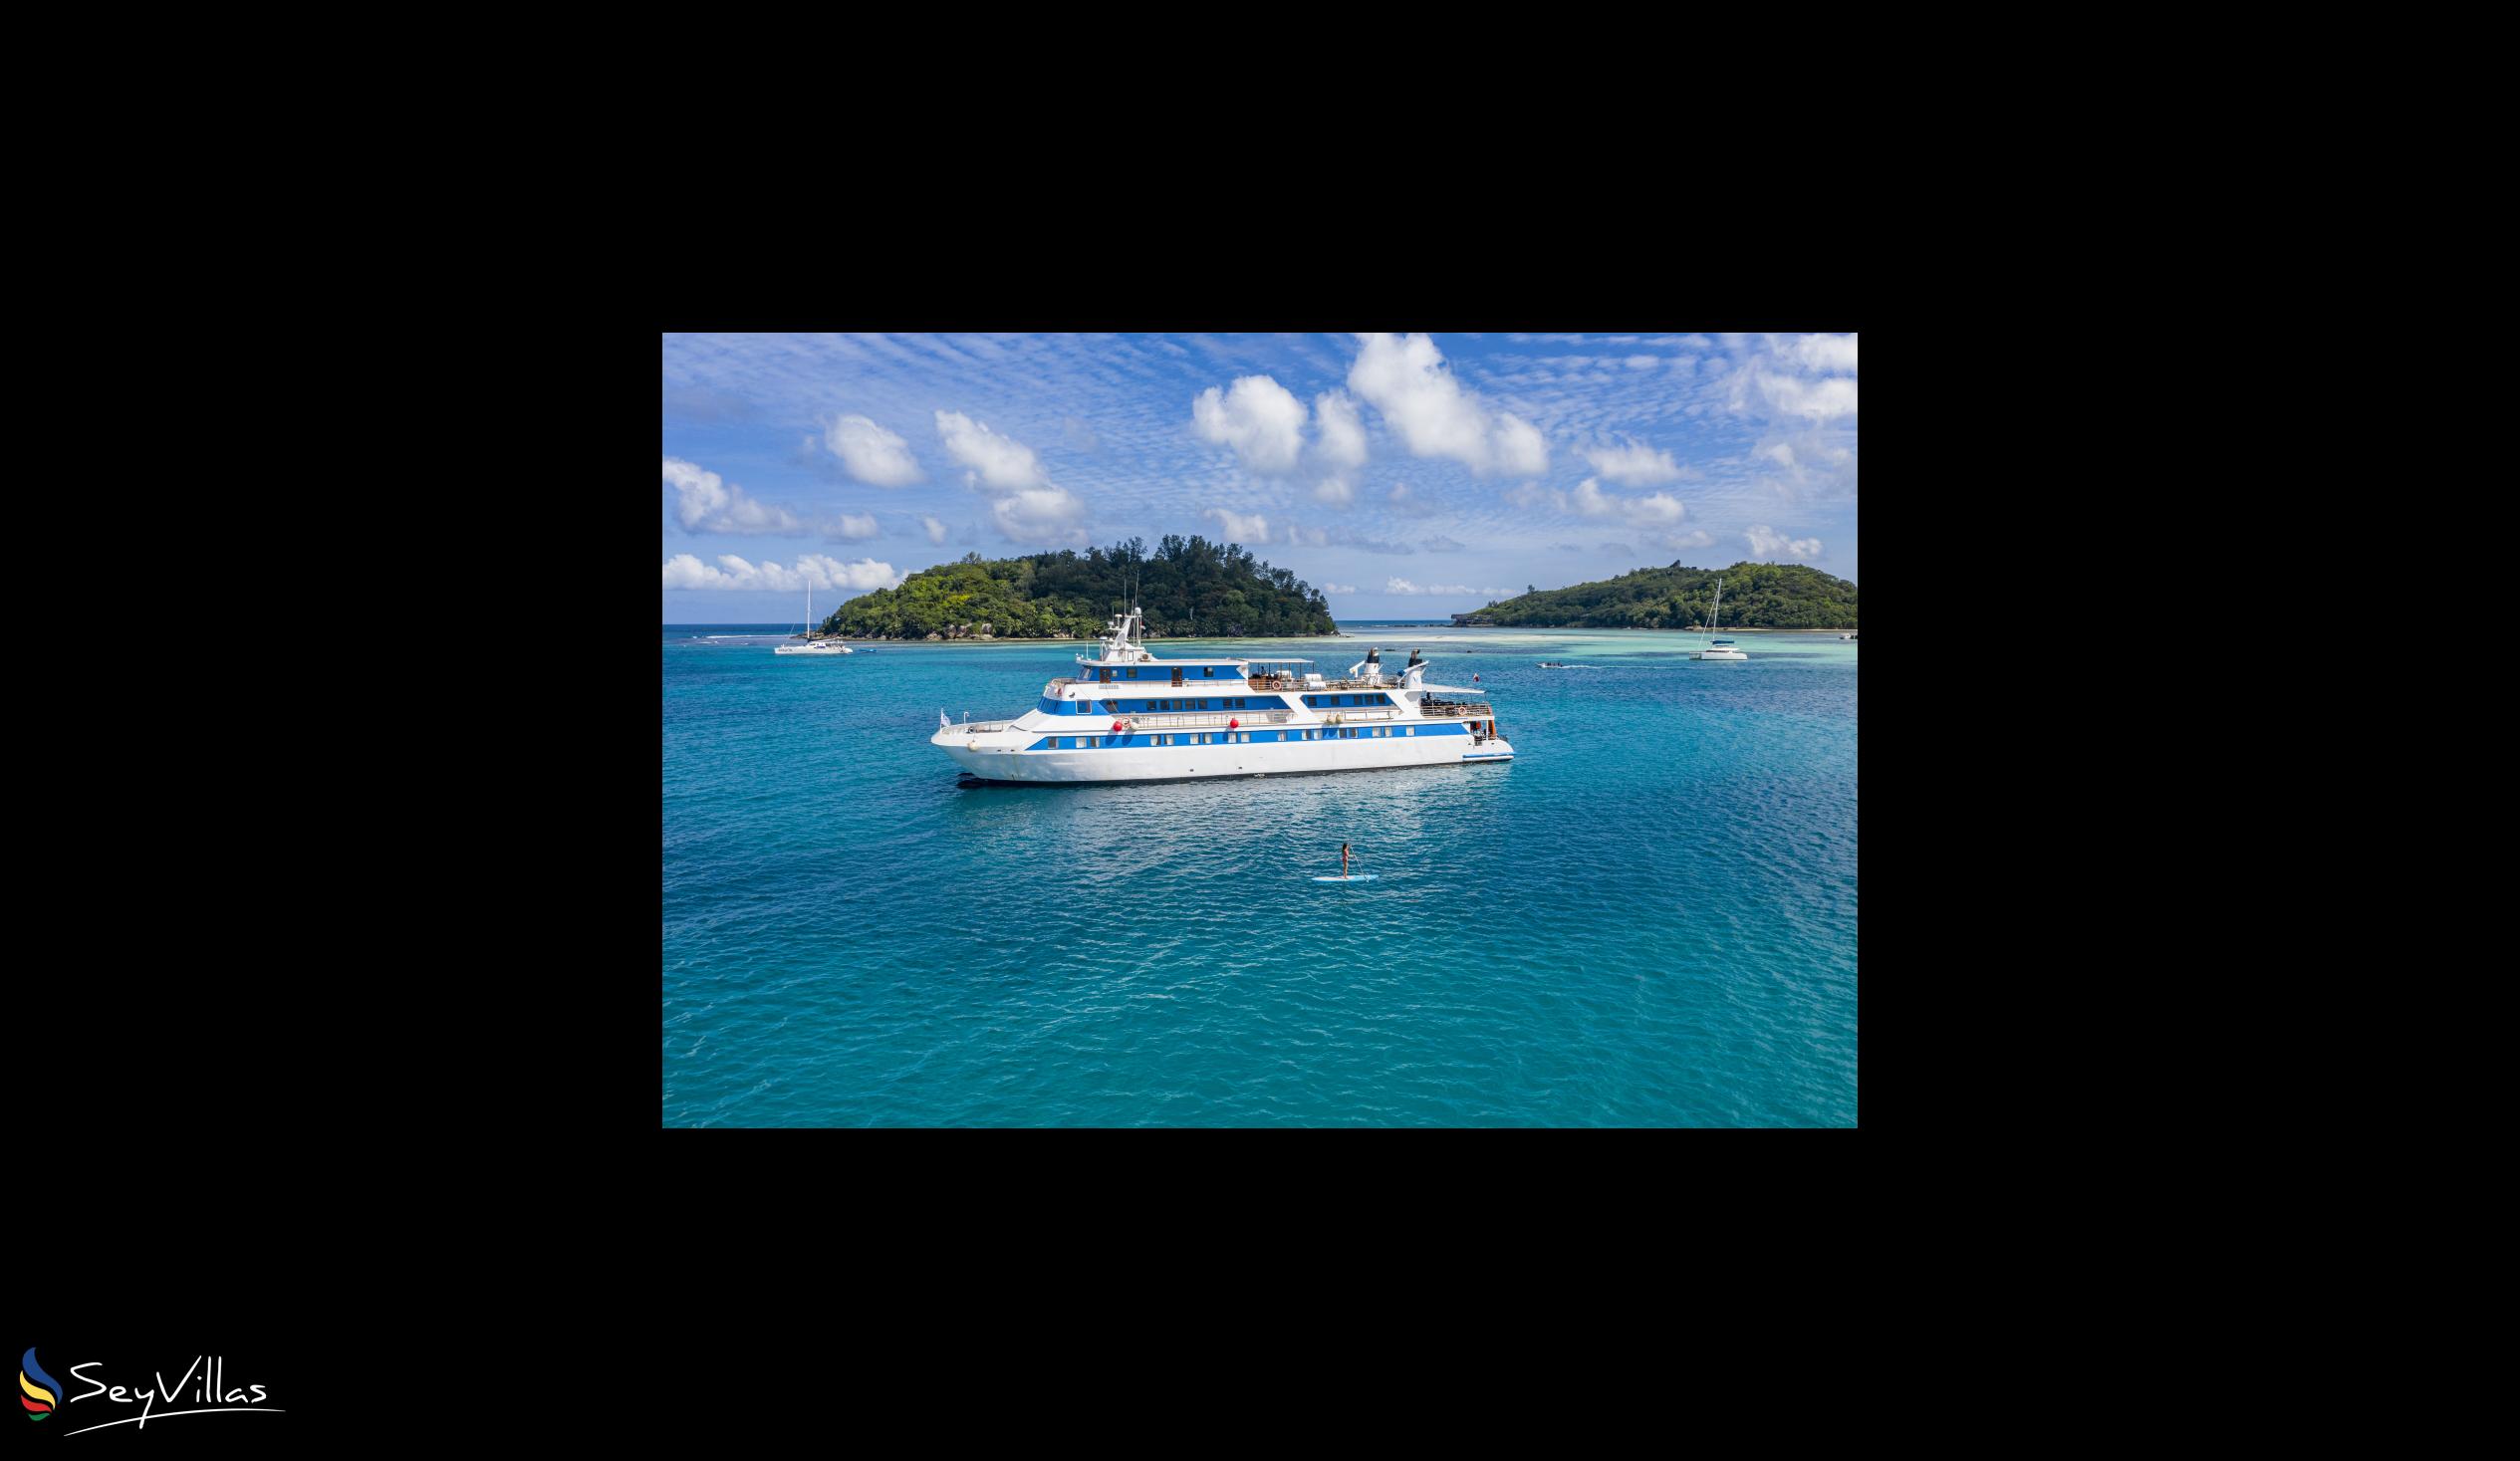 Foto 4: Pegasus Cruise (Variety Garden of Eden 4 nights) - Aussenbereich - Seychellen (Seychellen)